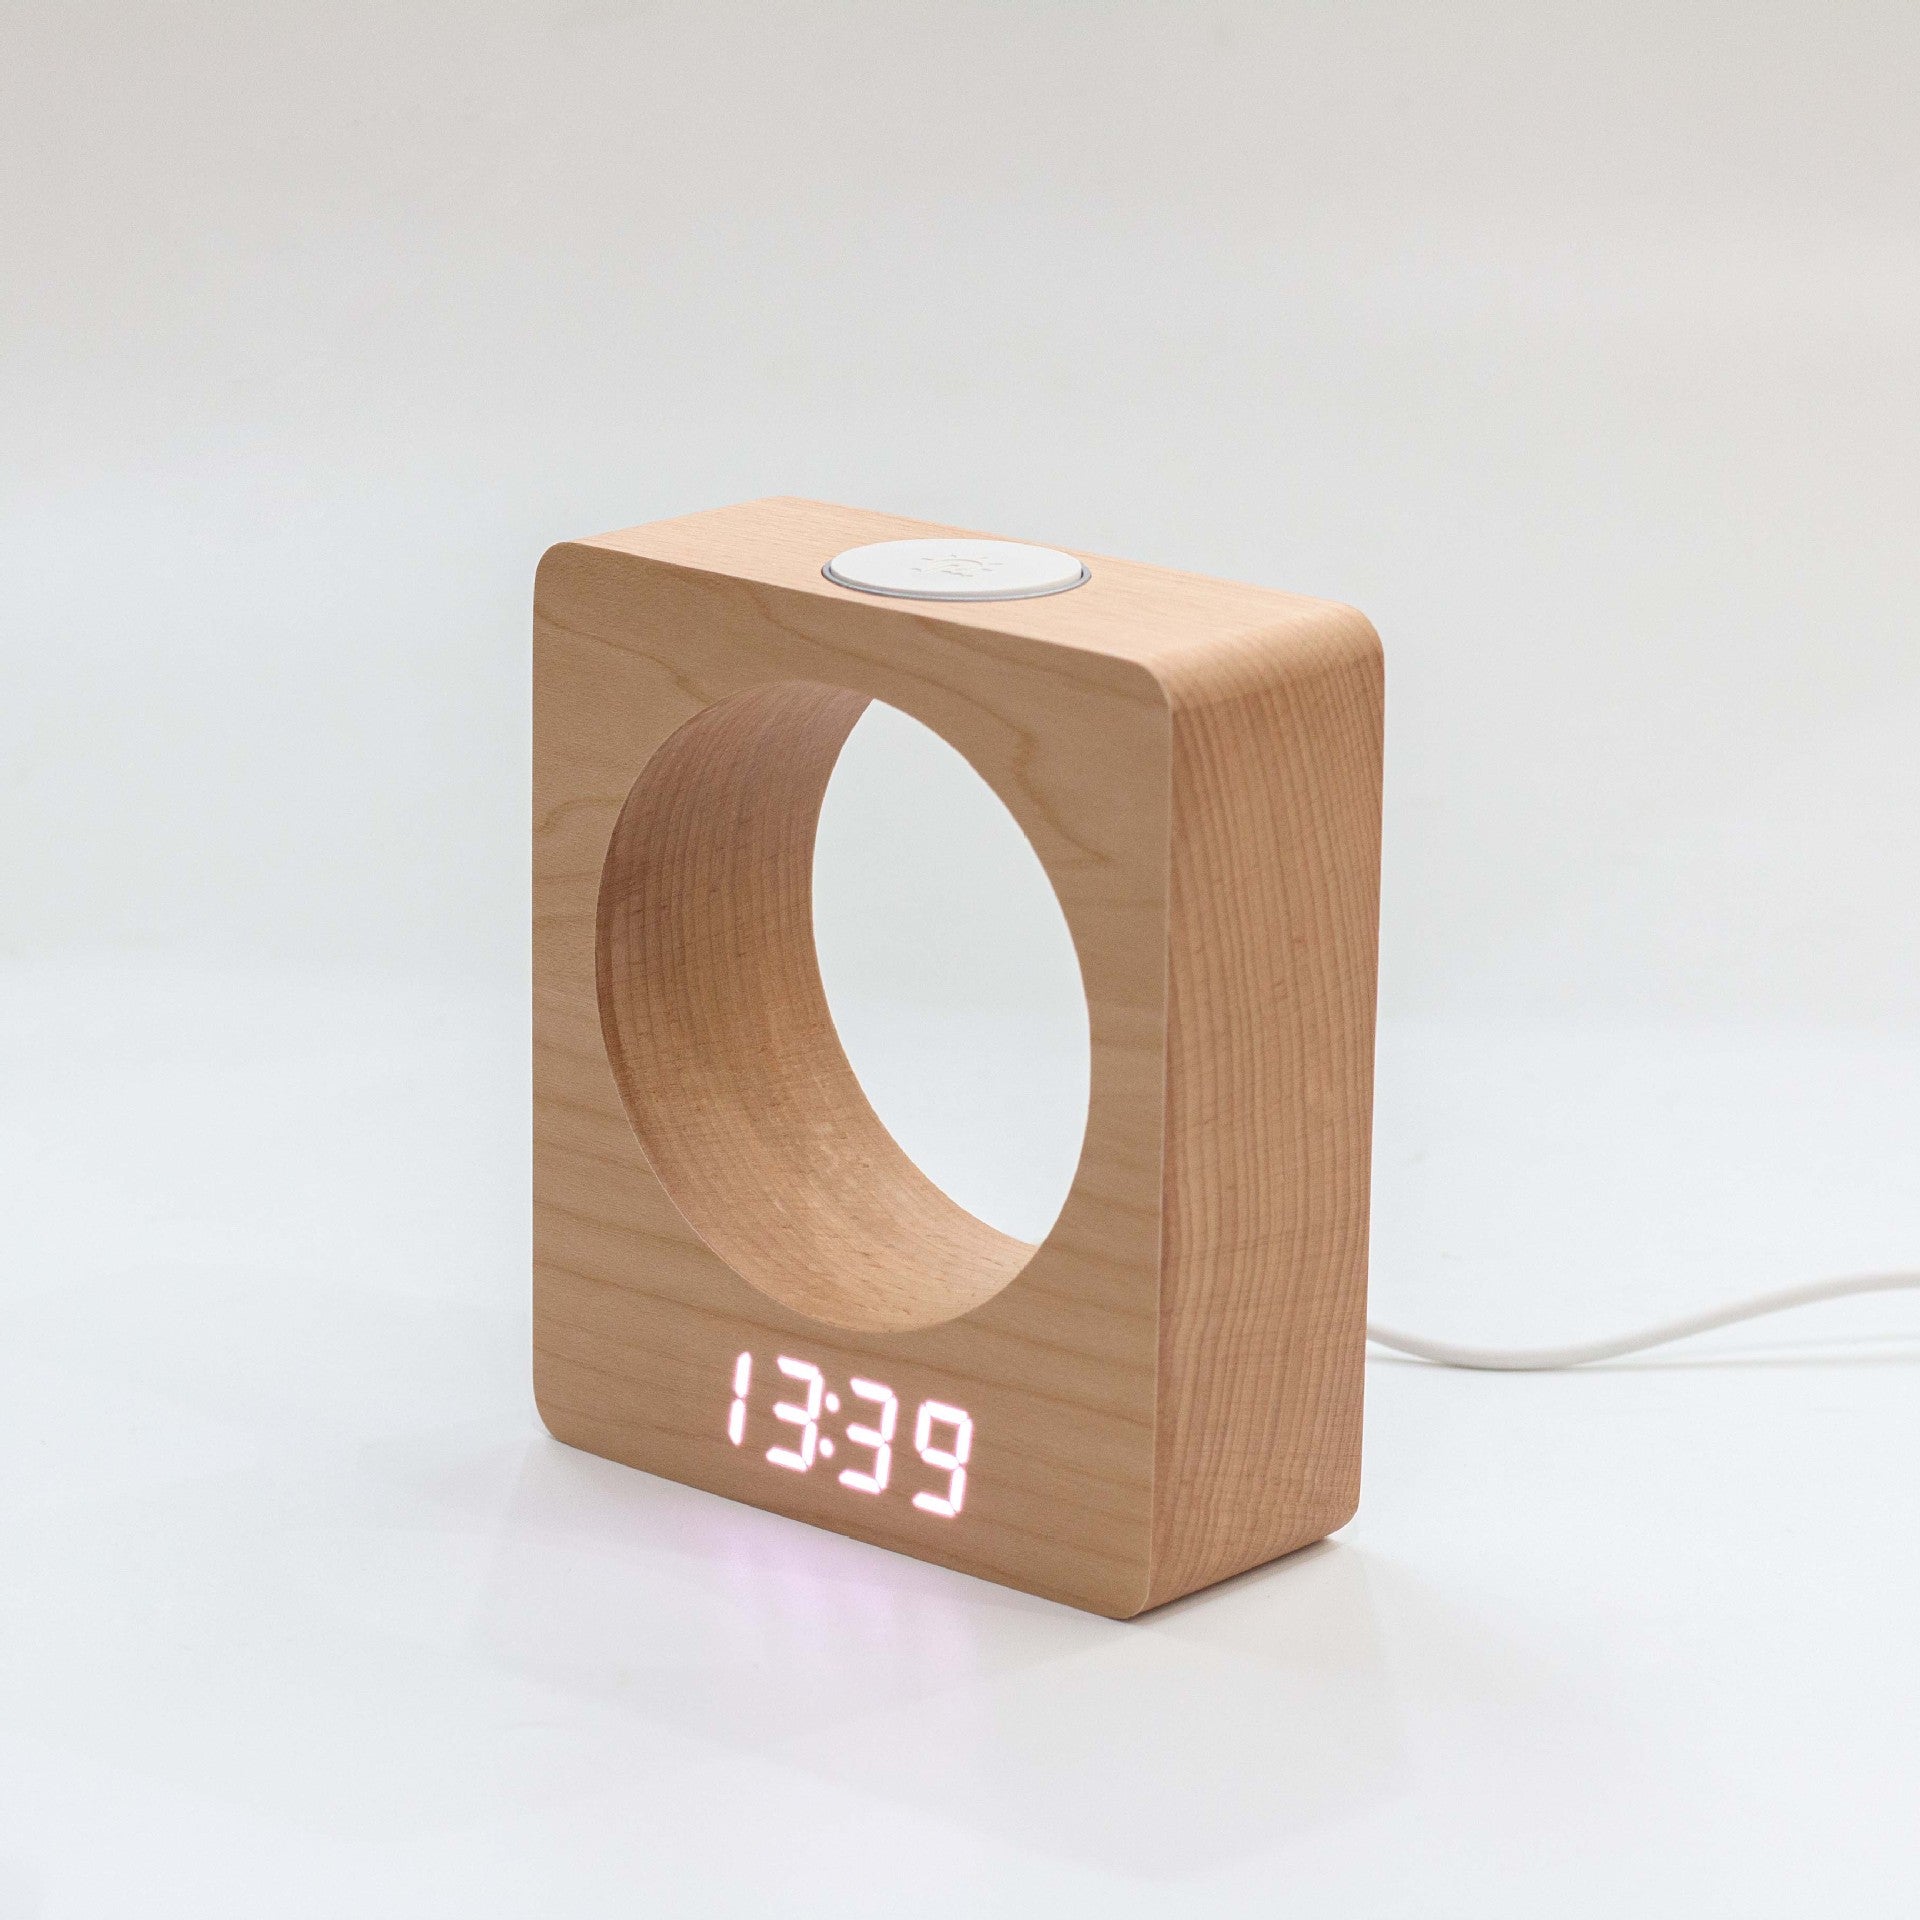 digital wooden alarm clock | Love Gadgets